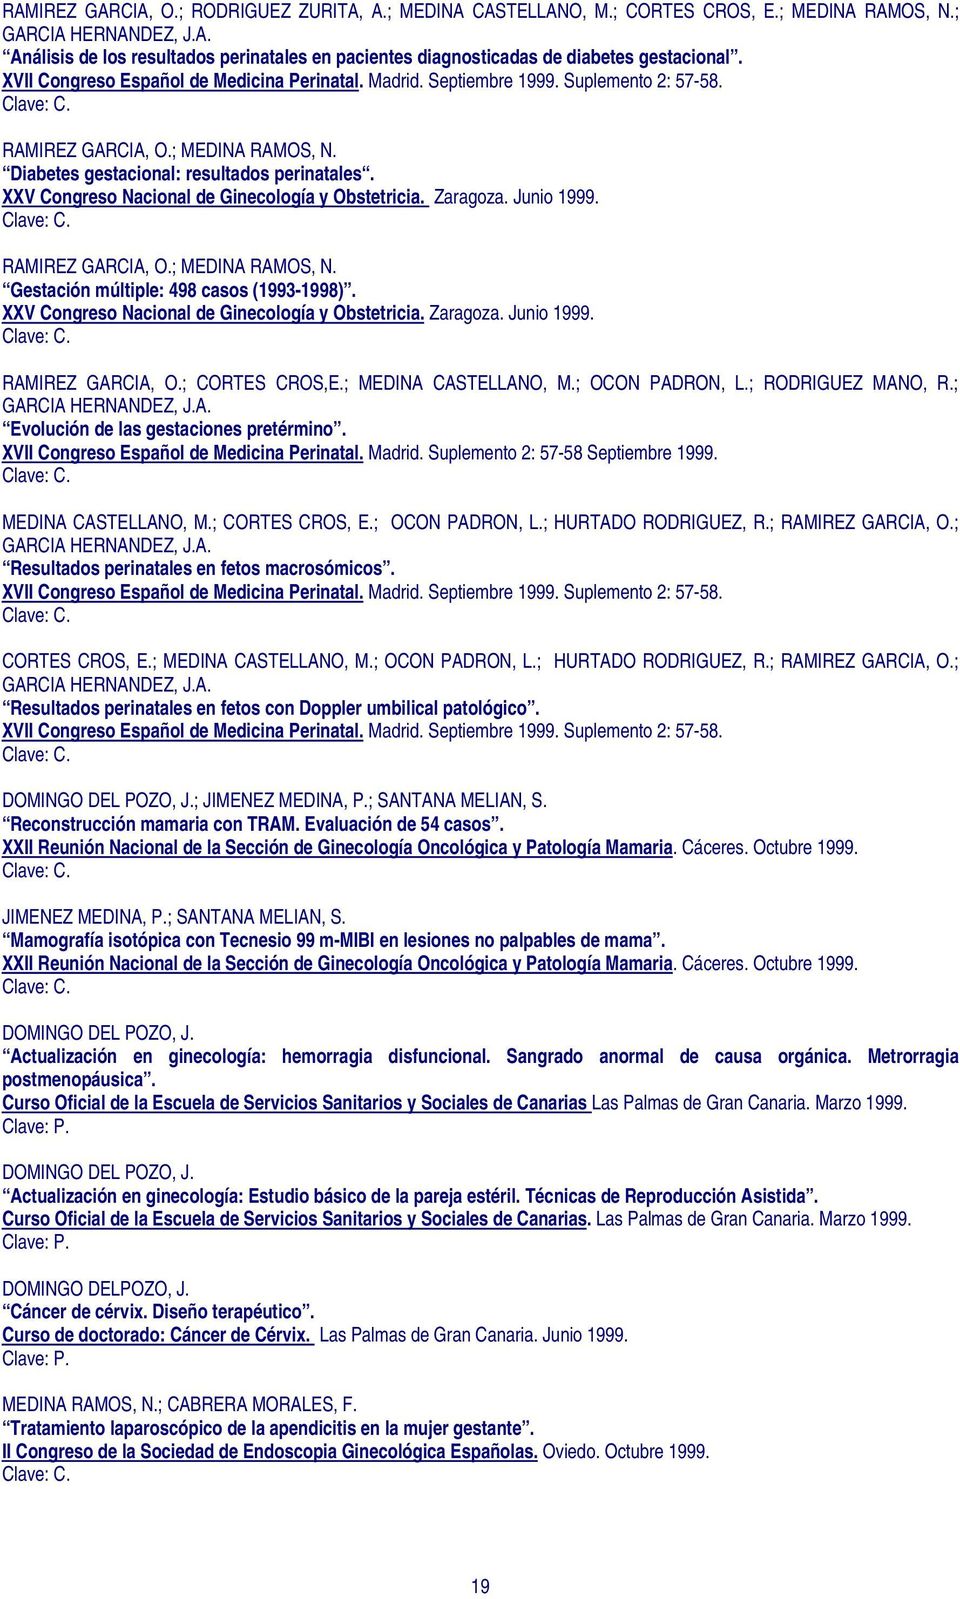 XXV Congreso Nacional de Ginecología y Obstetricia. Zaragoza. Junio 1999. RAMIREZ GARCIA, O.; MEDINA RAMOS, N. Gestación múltiple: 498 casos (1993-1998).